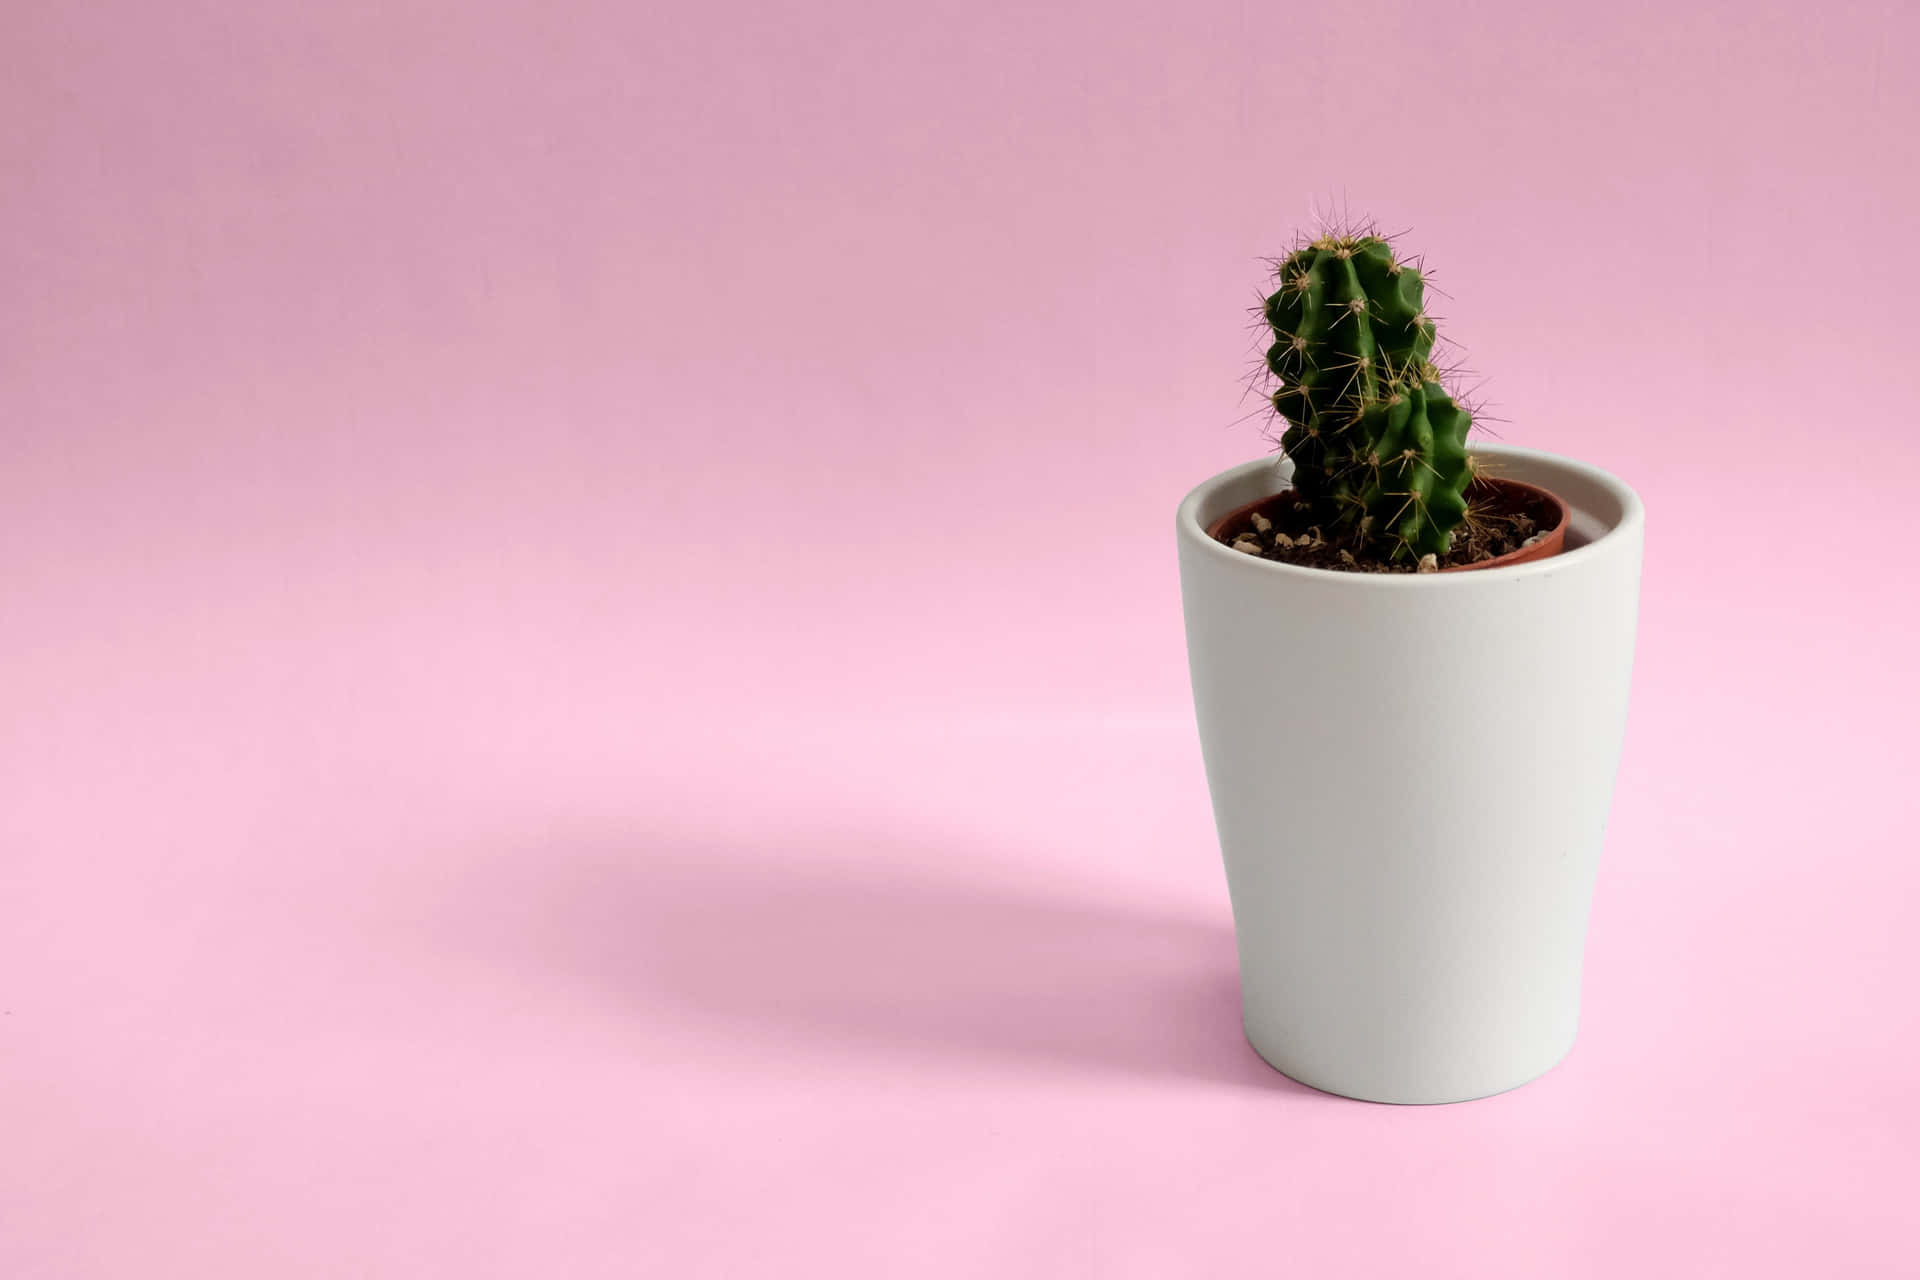 Desktopcon Immagine Di Mini Cactus In Vaso Per Un Look Minimalista. Sfondo